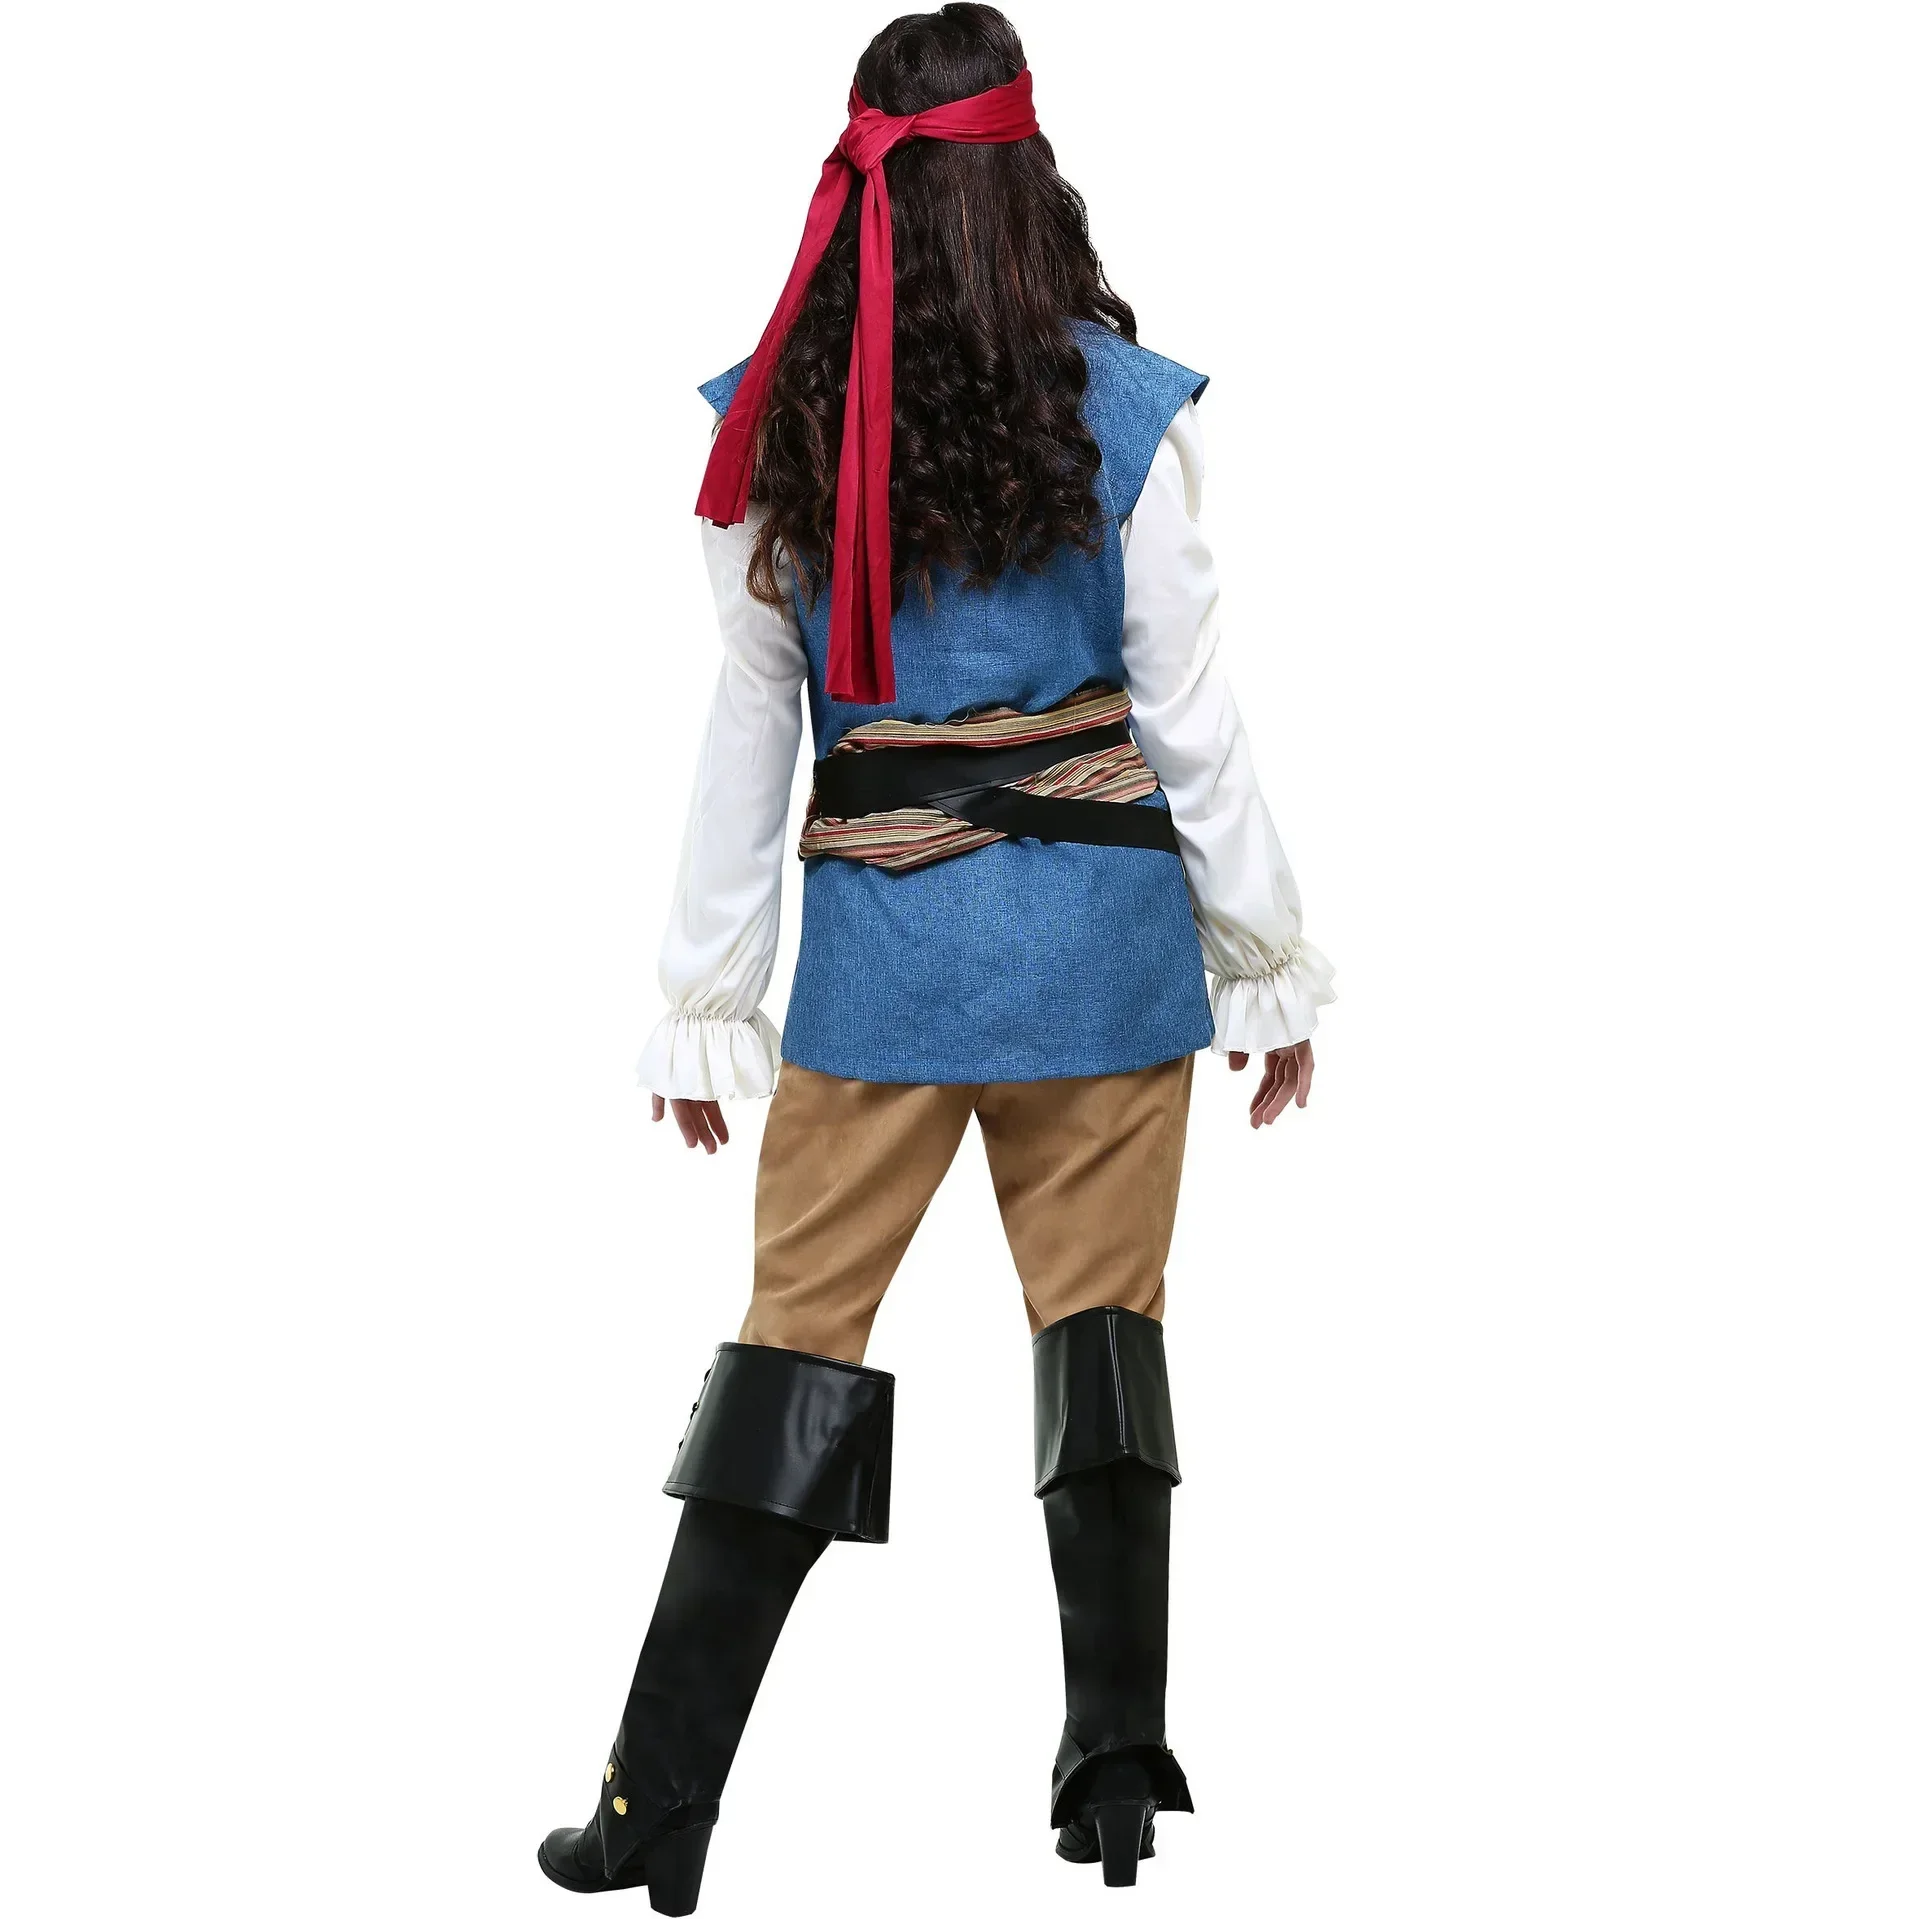 Ženy Muž Halloween Kapitán Pirátske Kostýmy pre Dospelých Piráti z Karibiku Maškaráda Cosplay Kostým